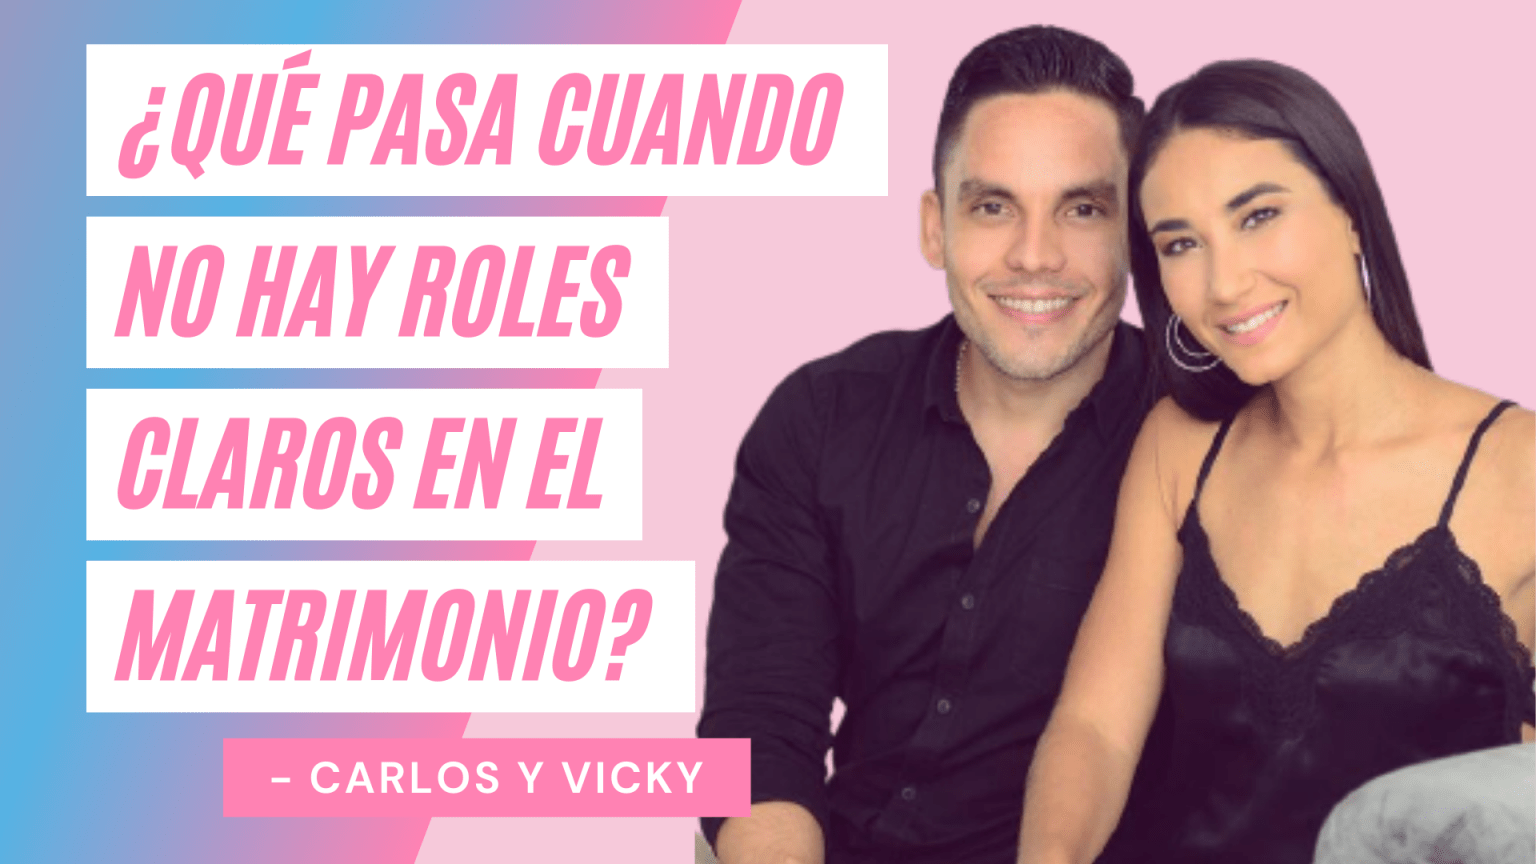 Clip #2 - Carlos y Vicky